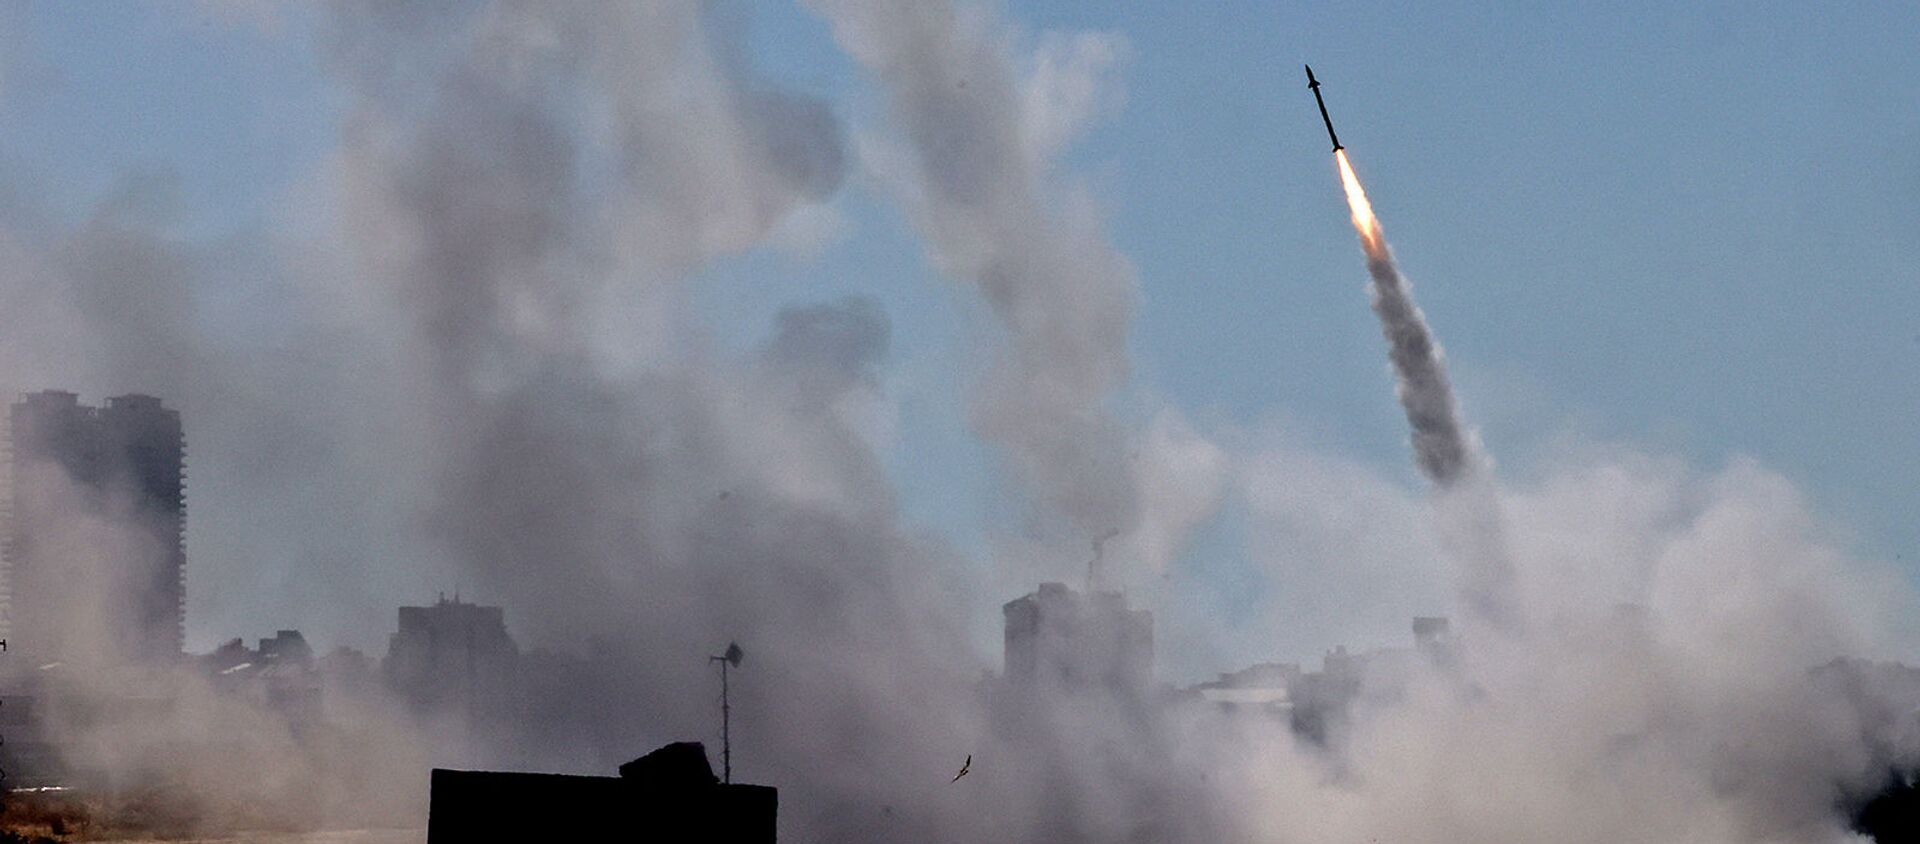 Система противовоздушной обороны Израиля Iron Dome активирована для перехвата ракеты, запущенной из сектора Газа, контролируемого палестинским движением ХАМАС (12 мая 2021). Ашдод - Sputnik Արմենիա, 1920, 17.05.2021